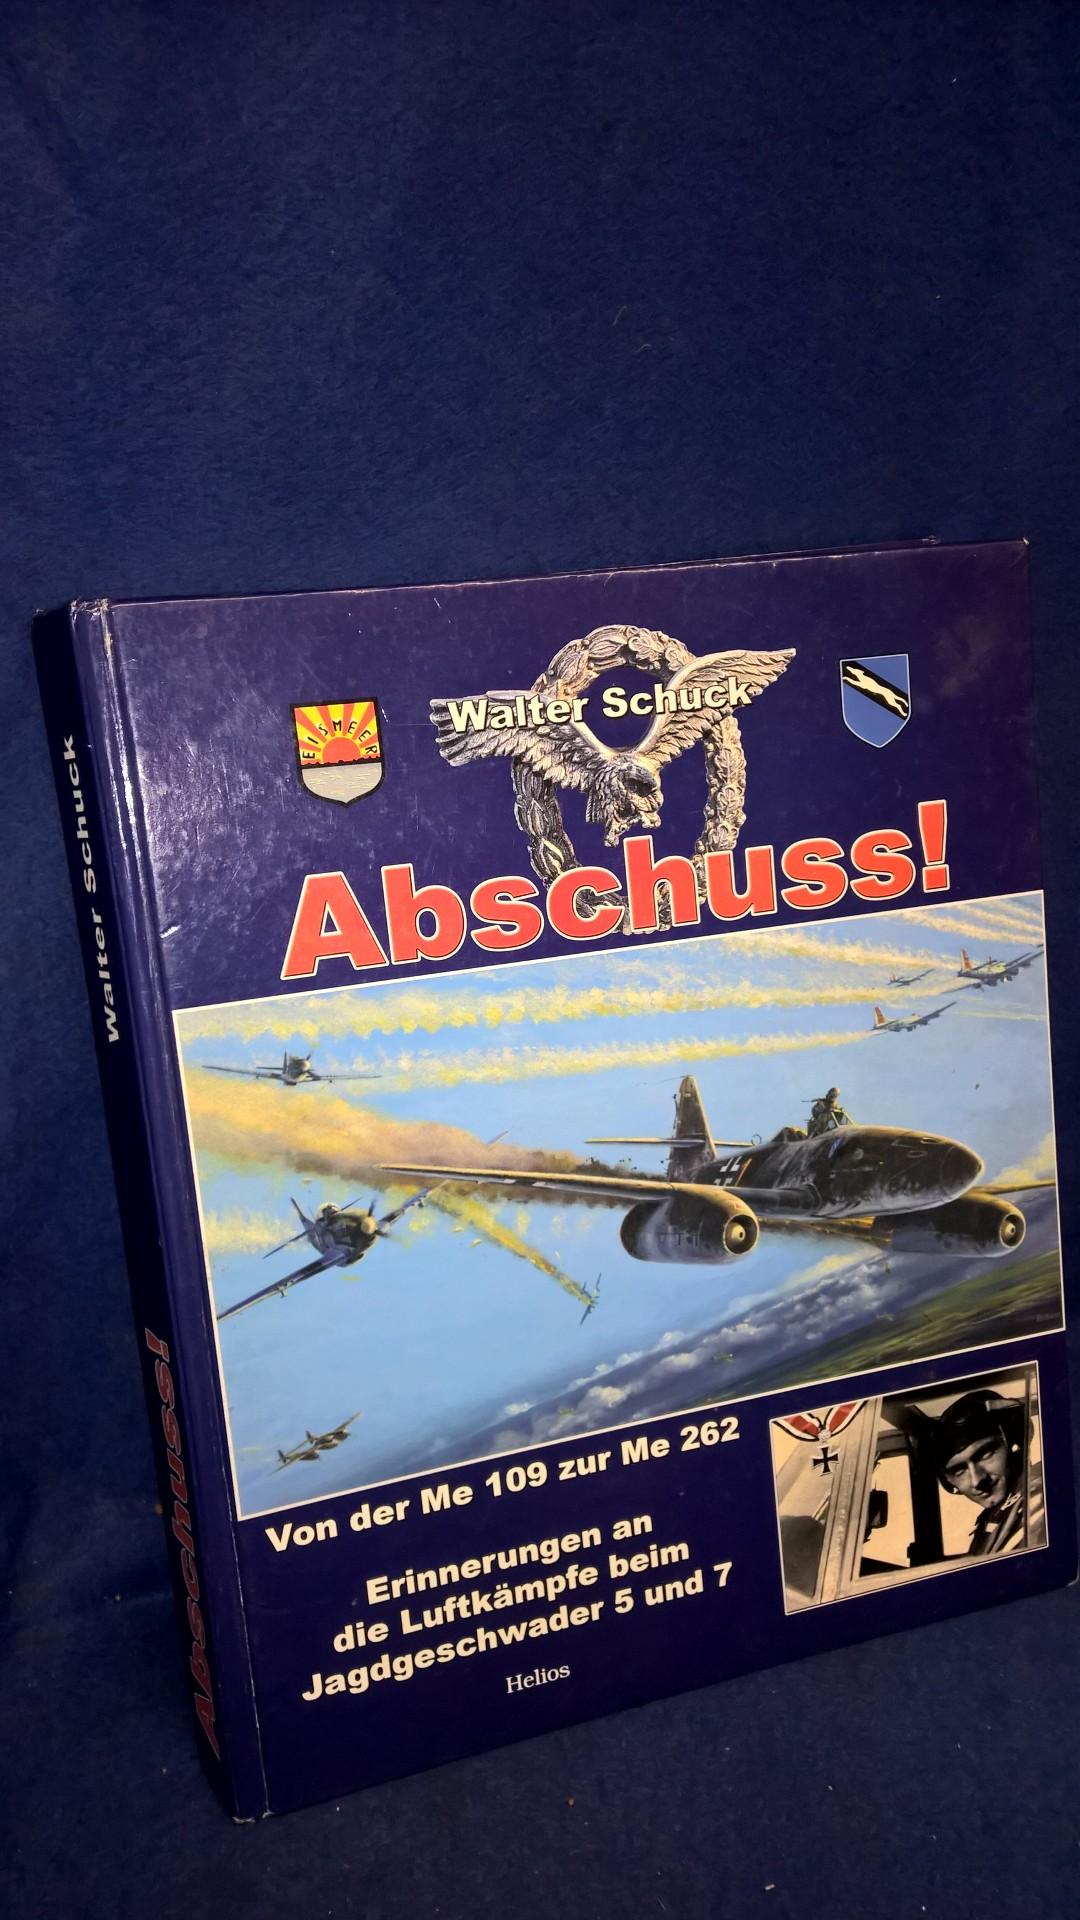 Abschuss!: Von der Me 109 zur Me 262. Erinnerungen an die Luftkämpfe beim Jagdgeschwader 5 und 7.